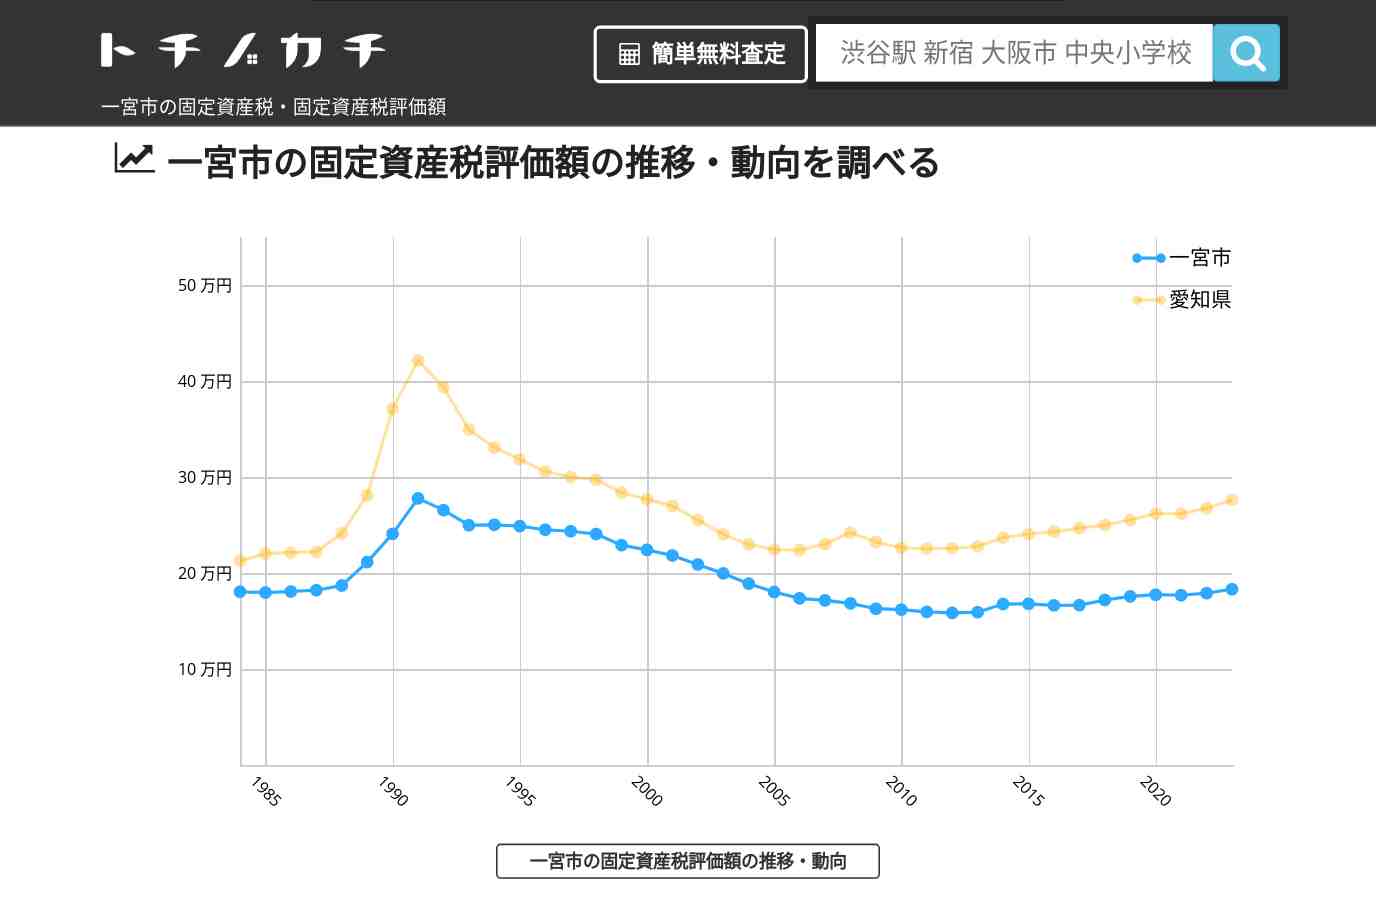 丹陽中学校(愛知県 一宮市)周辺の固定資産税・固定資産税評価額 | トチノカチ